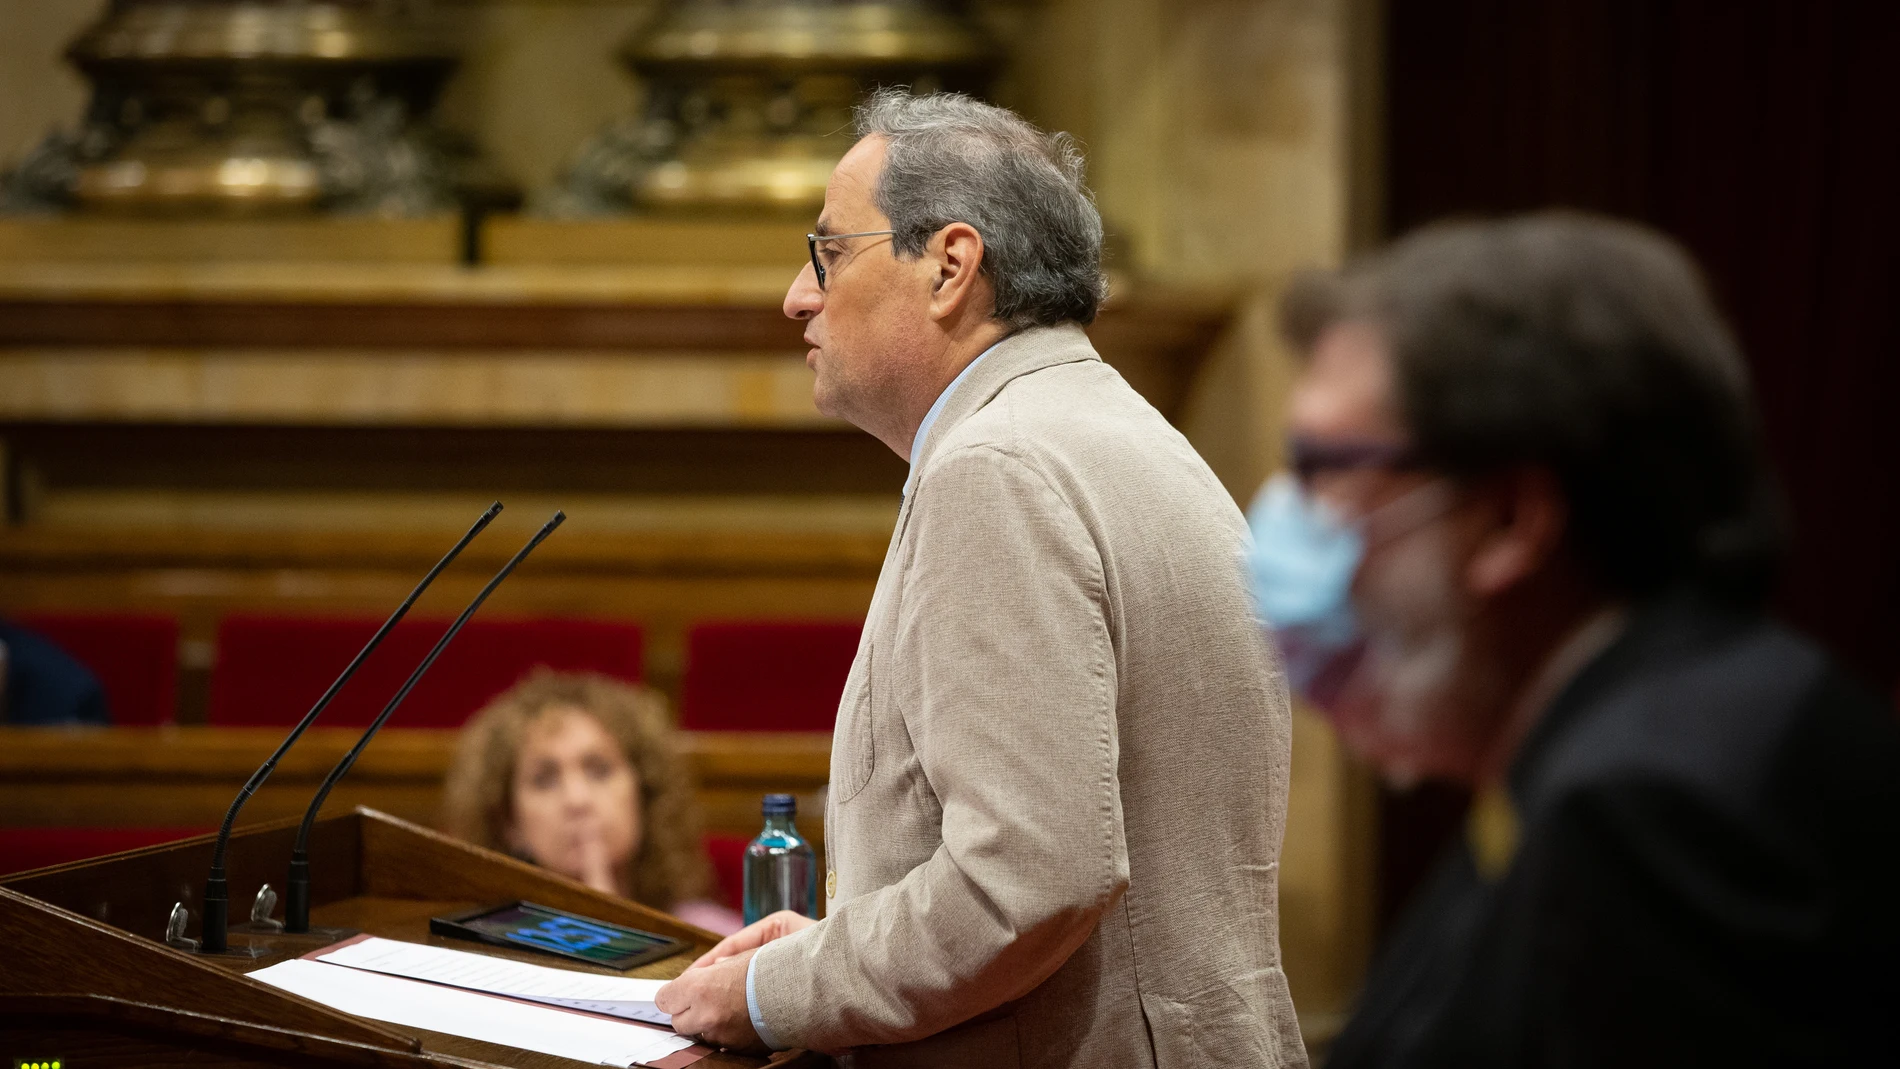 El president de la Generalitat, Quim Torra, durante su intervención en una sesión plenaria en la que se debatirá la gestión de las residencias para personas mayores y para personas con discapacidad durante la pandemia del COVID-19, en Barcelona, Catalunya (España), a 7 de julio de 2020.07 JULIO 2020David Zorrakino / Europa Press07/07/2020